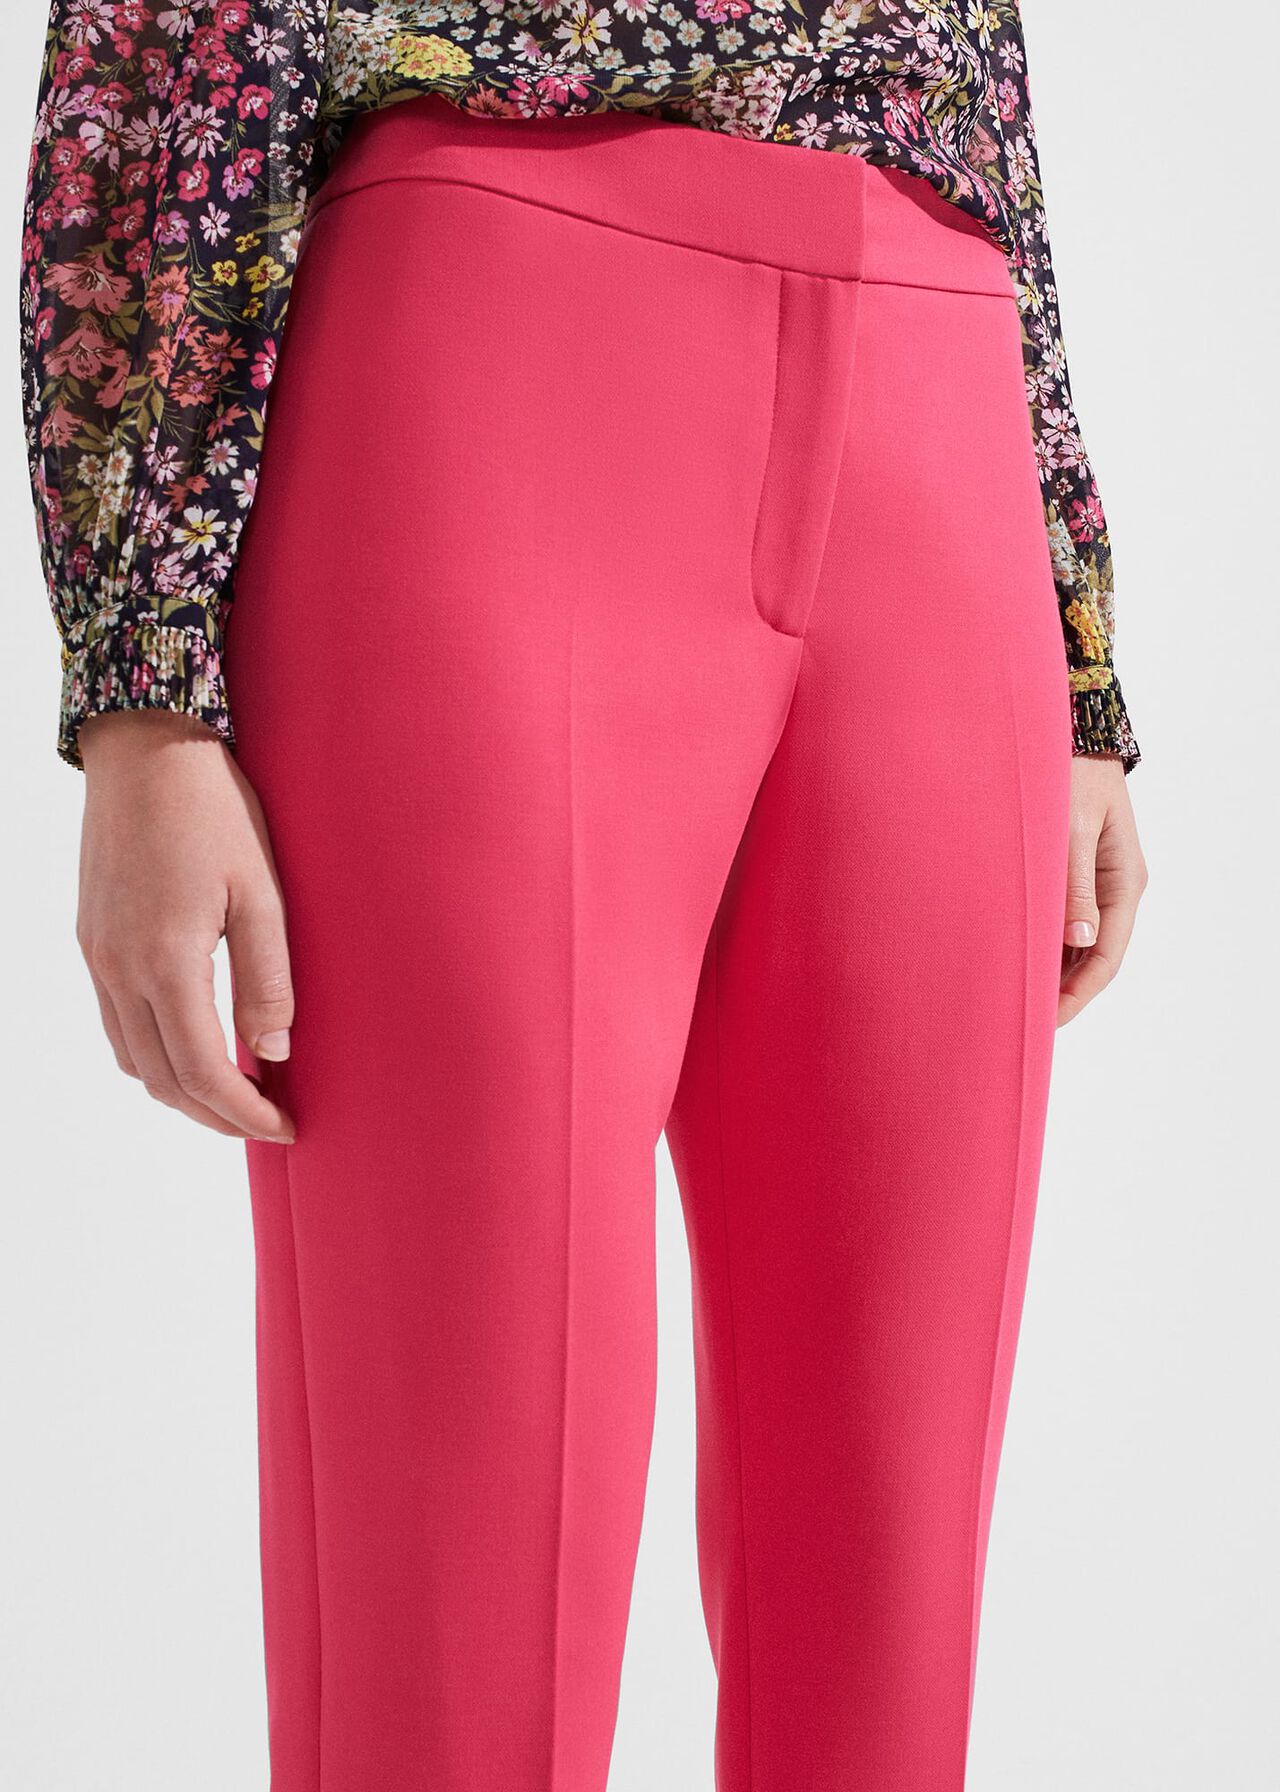 Kaia Slim Trousers, Geranium Pink, hi-res